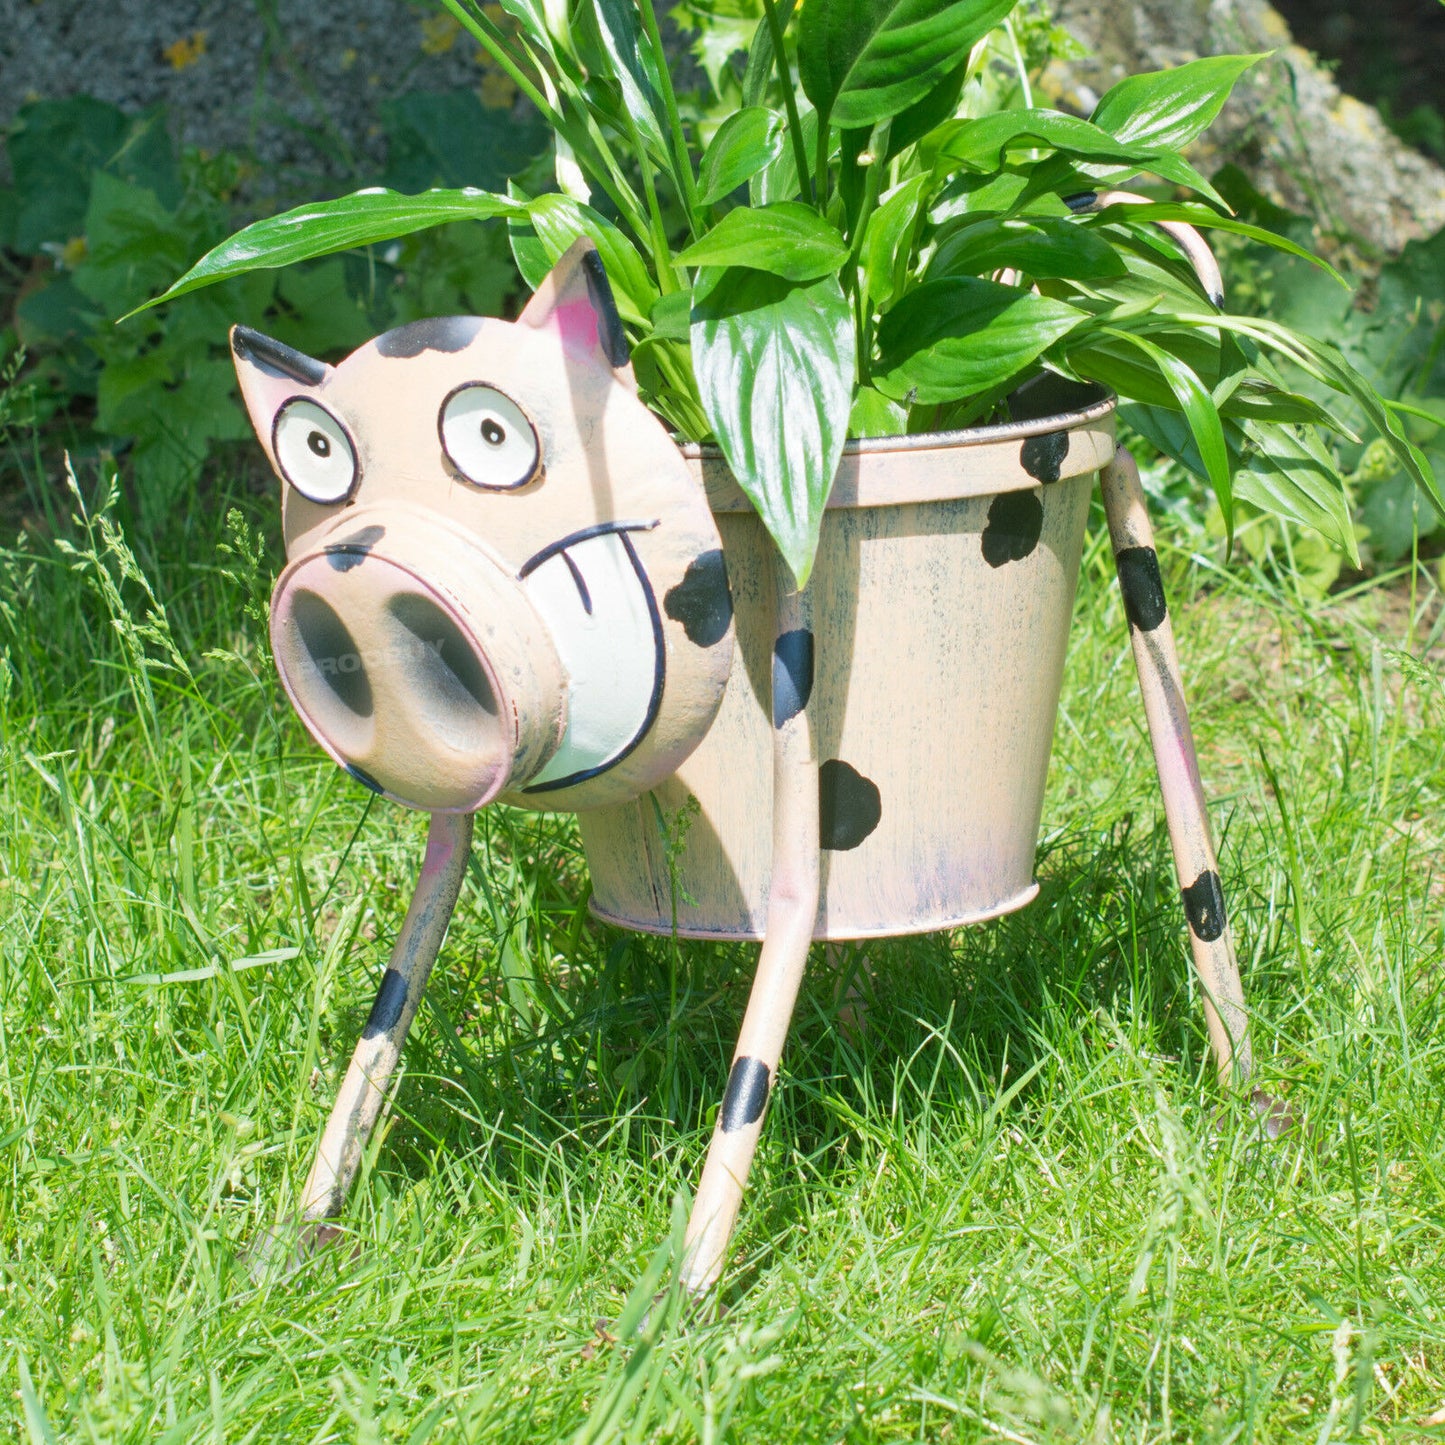 Nodding Pig Garden Planter with Pot Ornament